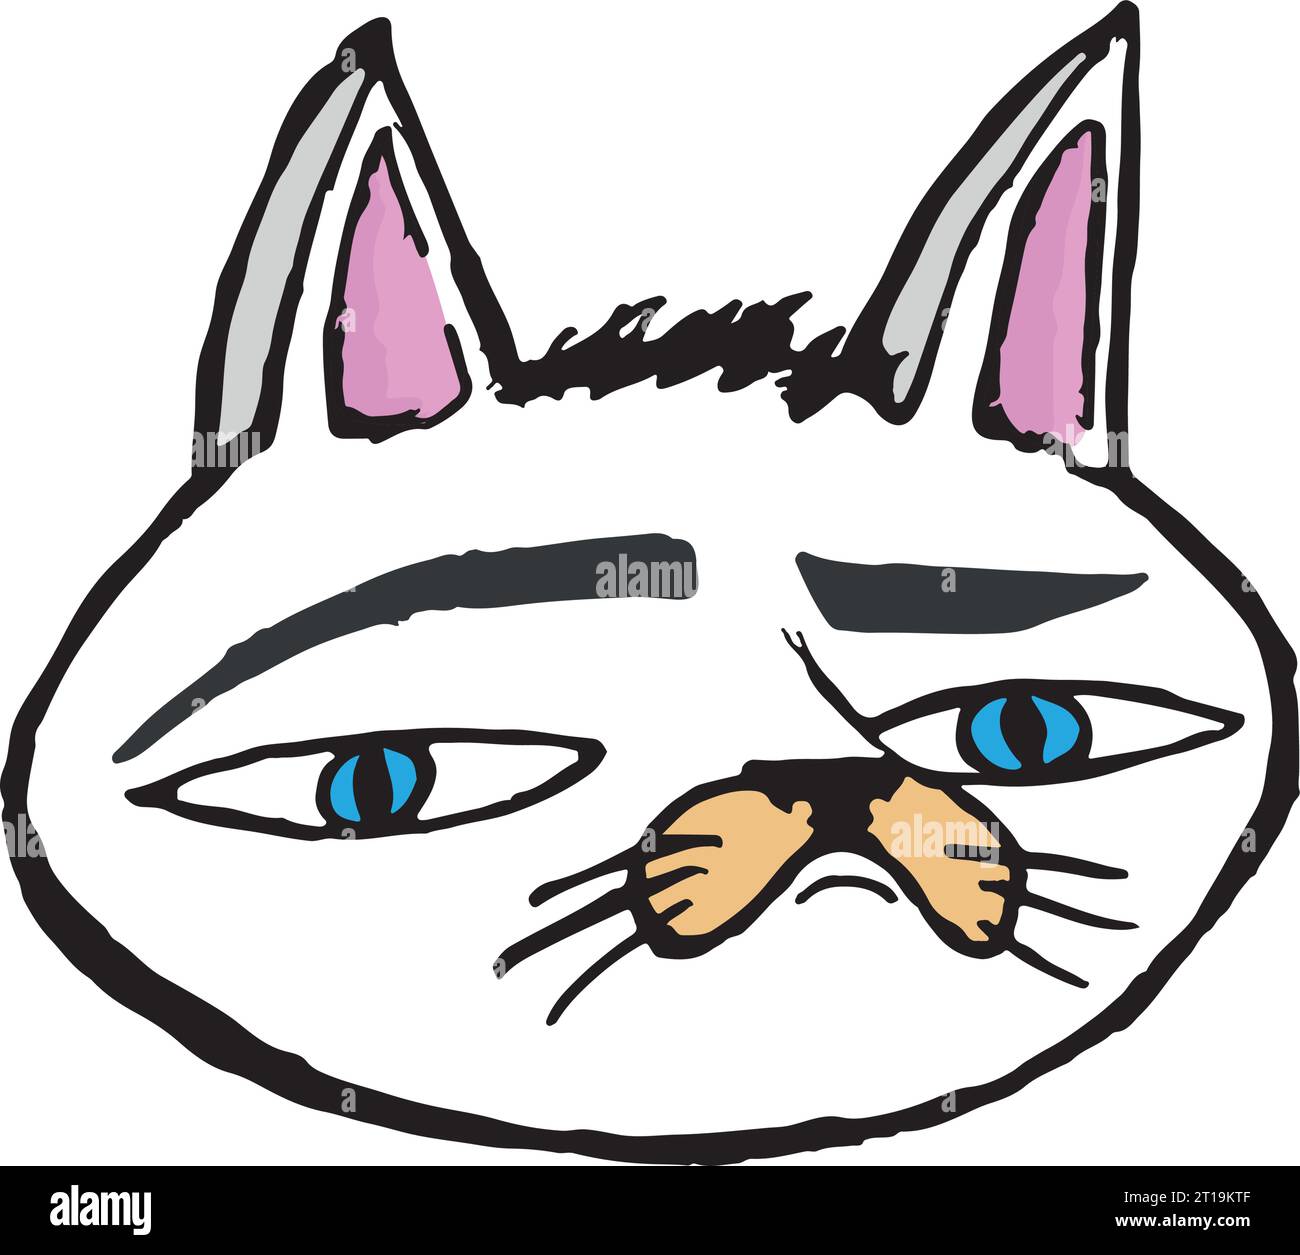 Weißer grummeliger Katzenkopf-Aufkleber mit farbigen Linien und blauen Augen trägt einen sarkastischen Ausdruck im Gesicht. Stock Vektor